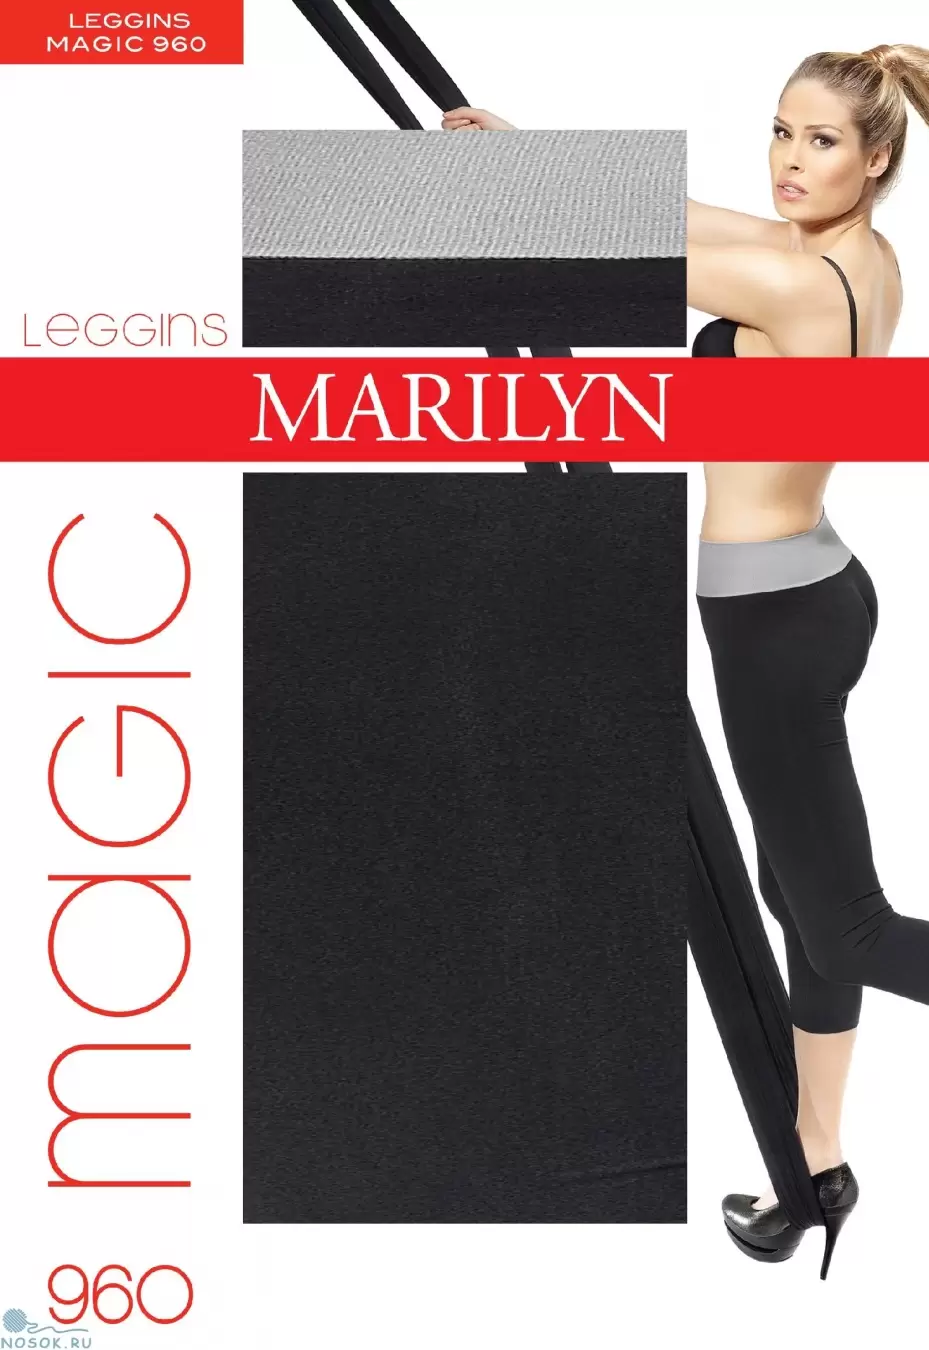 Marilyn Magic 960, леггинсы РАСПРОДАЖА (изображение 1)